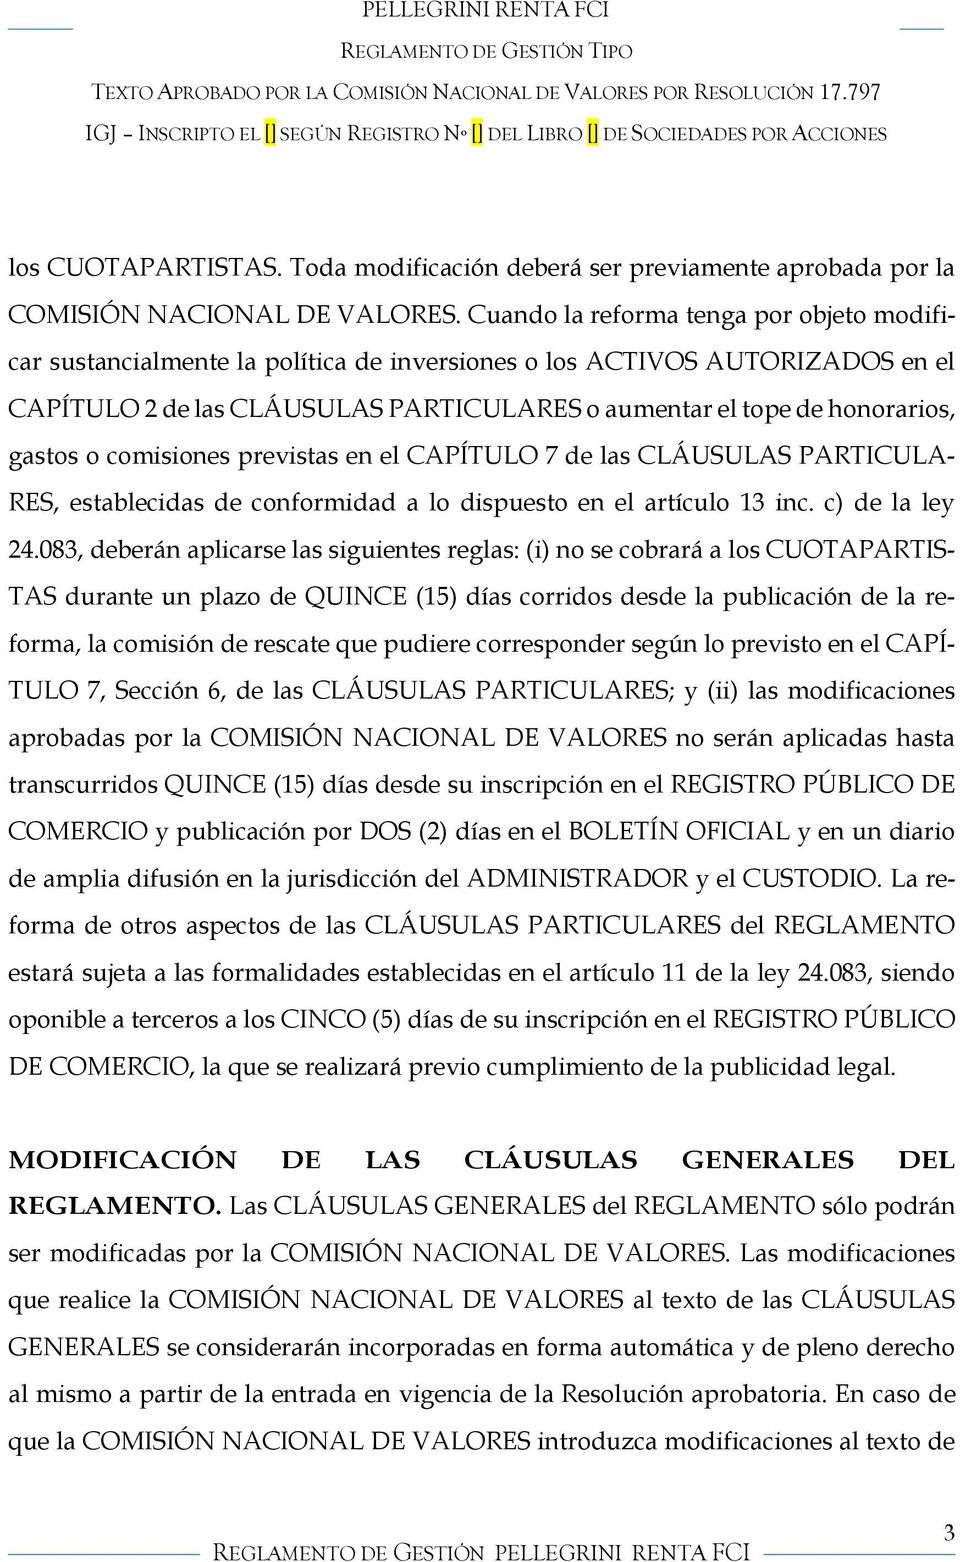 gastos o comisiones previstas en el CAPÍTULO 7 de las CLÁUSULAS PARTICULA- RES, establecidas de conformidad a lo dispuesto en el artículo 13 inc. c) de la ley 24.